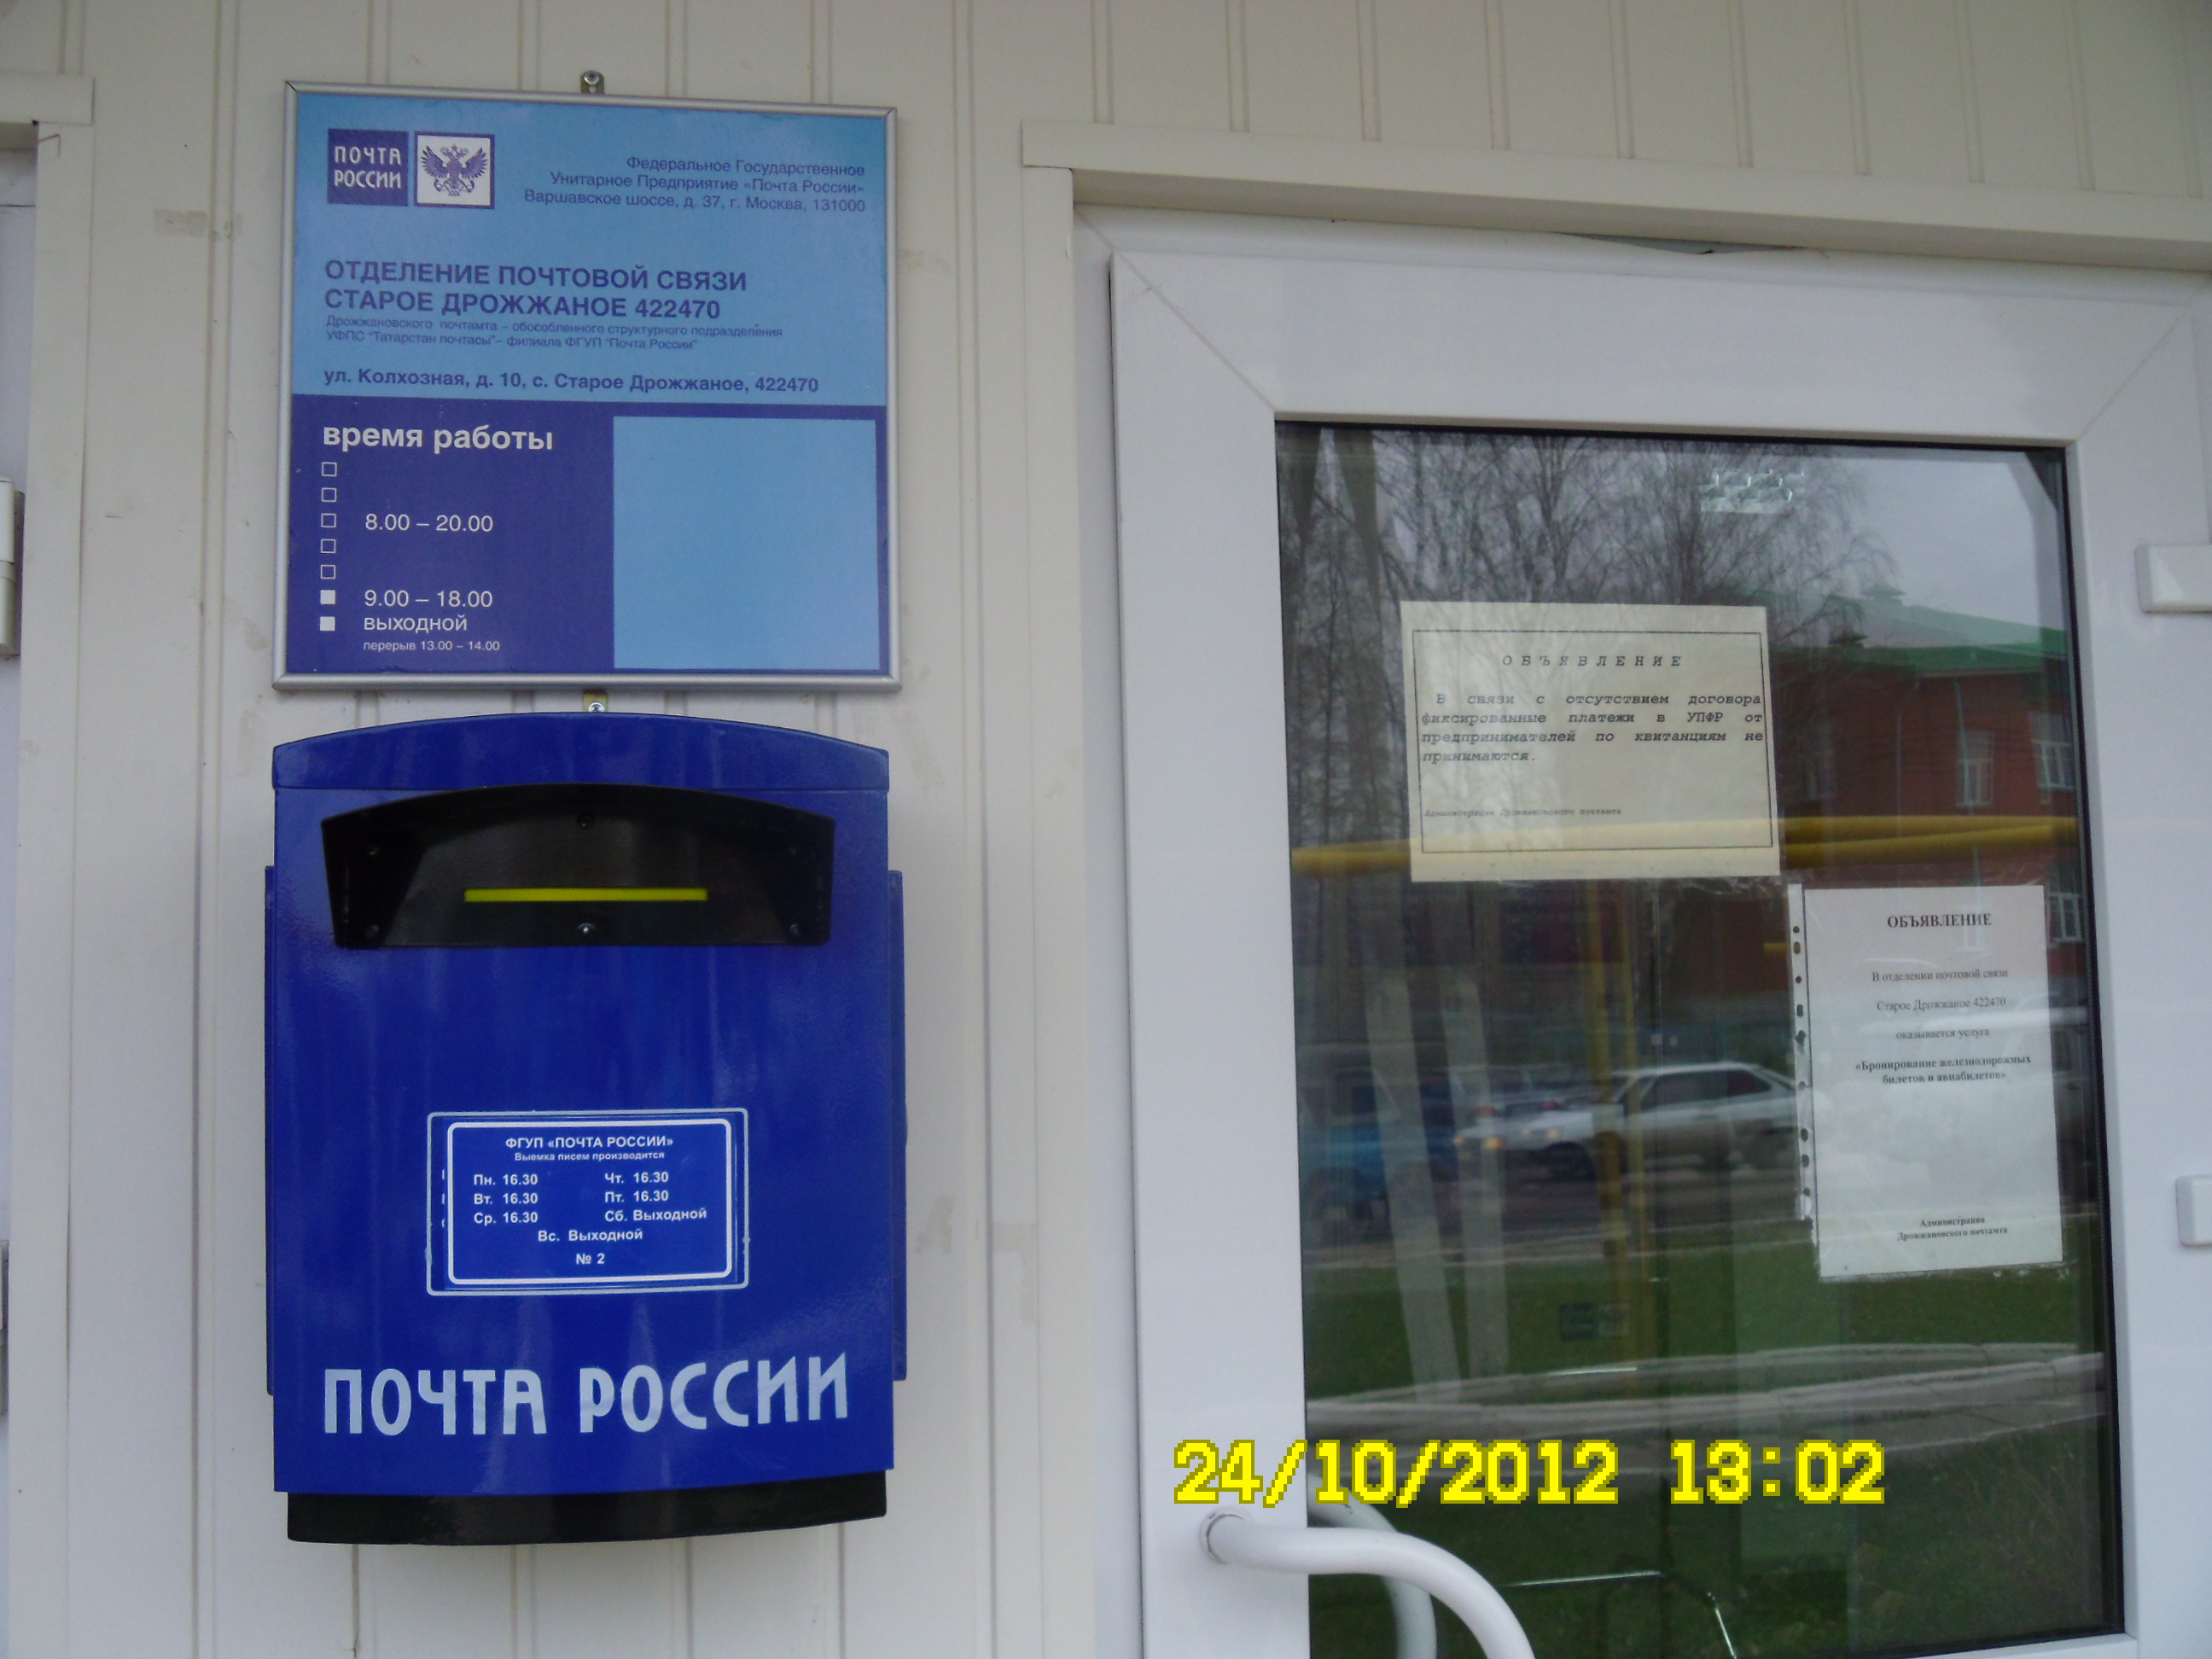 ВХОД, отделение почтовой связи 422499, Татарстан респ., Дрожжановский р-он